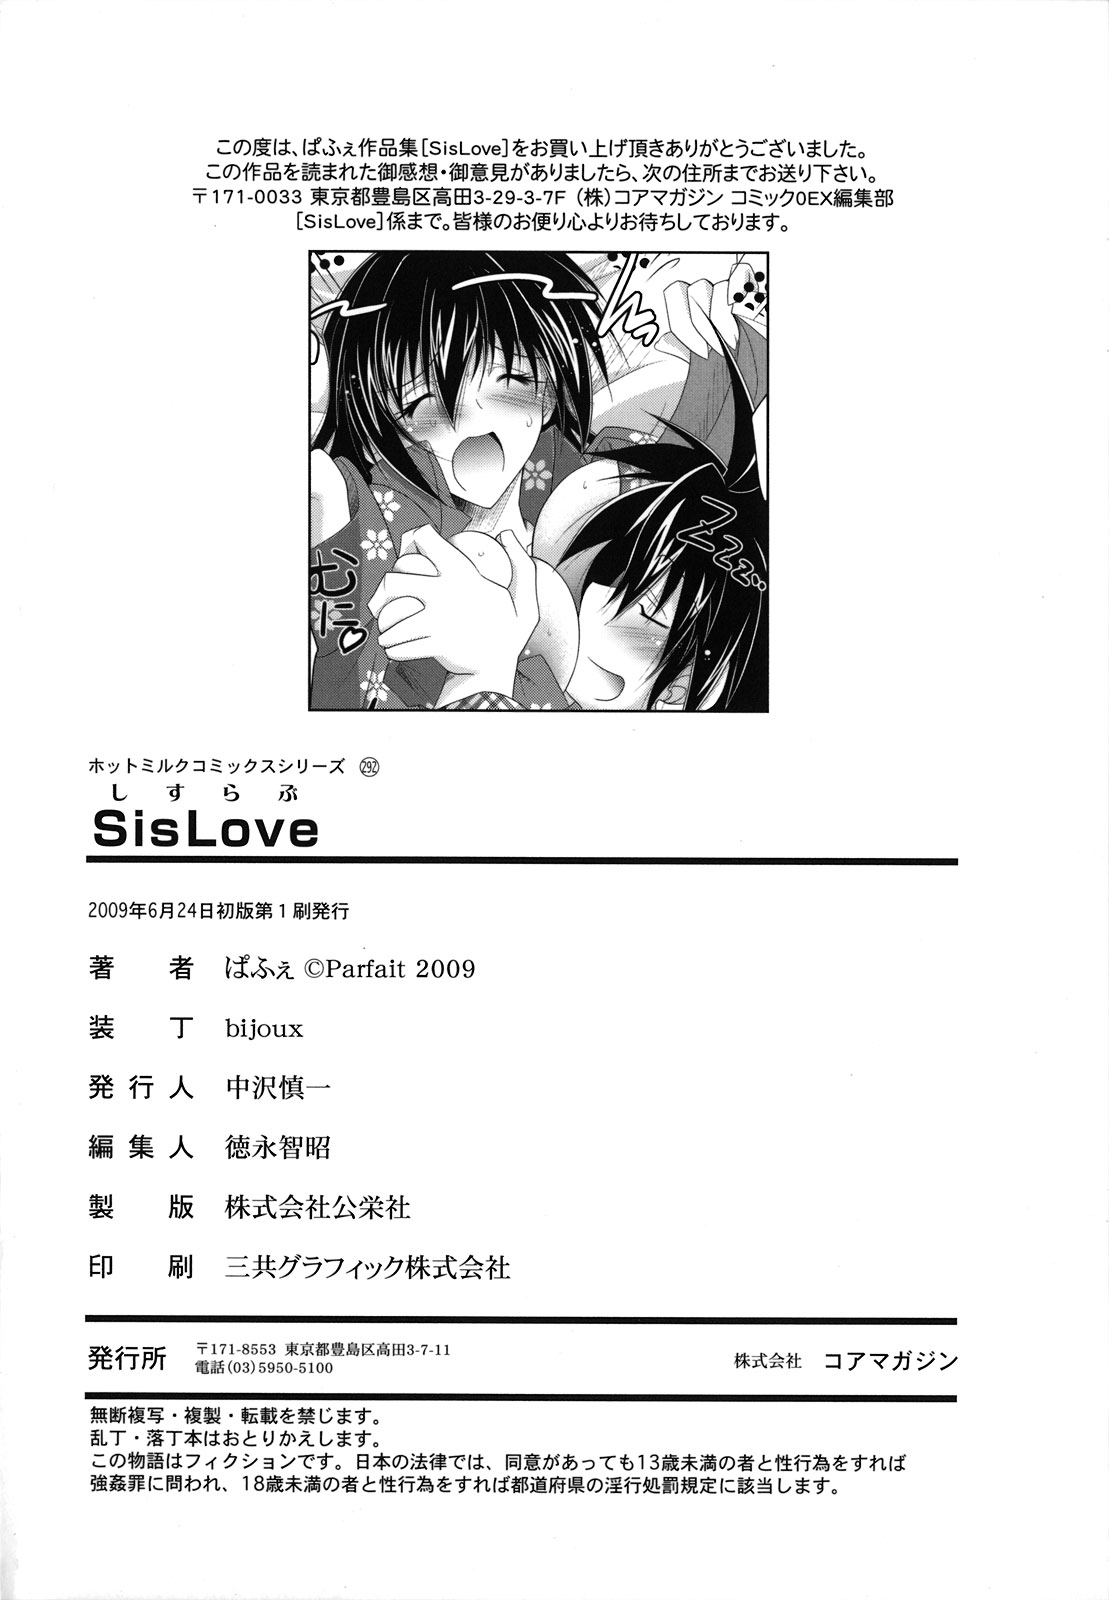 [ぱふぇ] SisLove しすらぶ [2009-06-24]